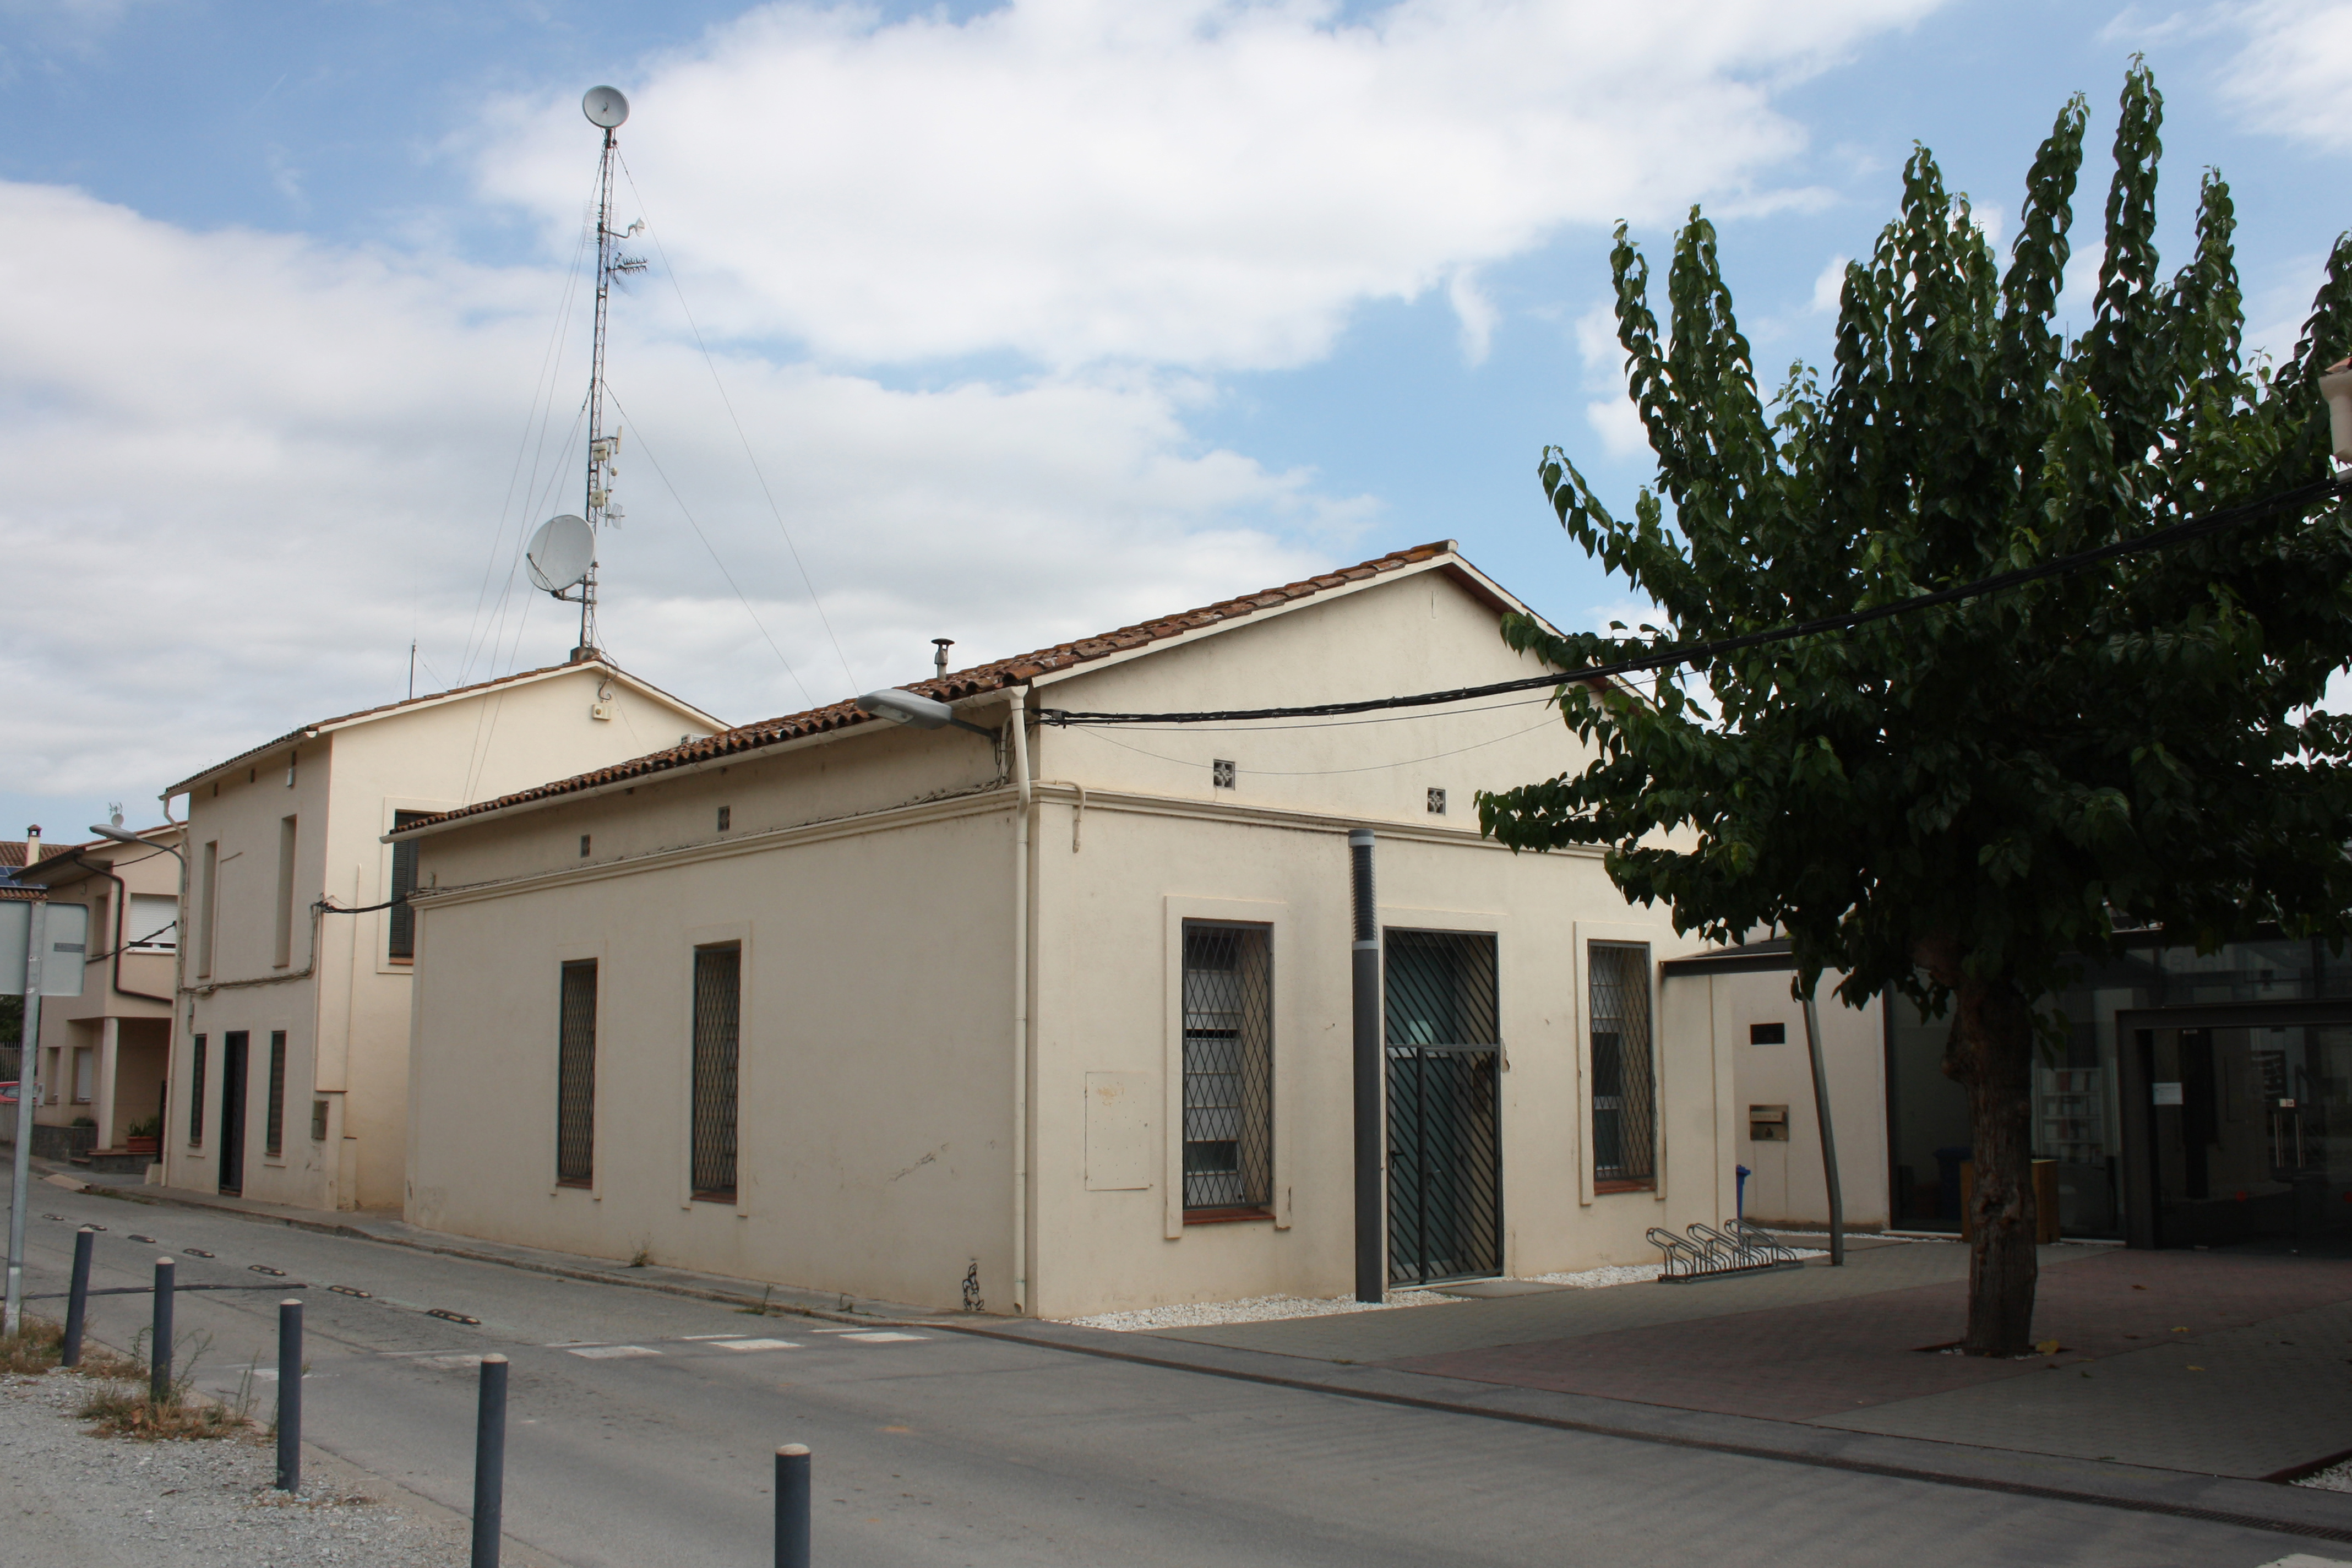 L'antiga biblioteca Sant Jordi està al carrer Mestre Joan Batlle